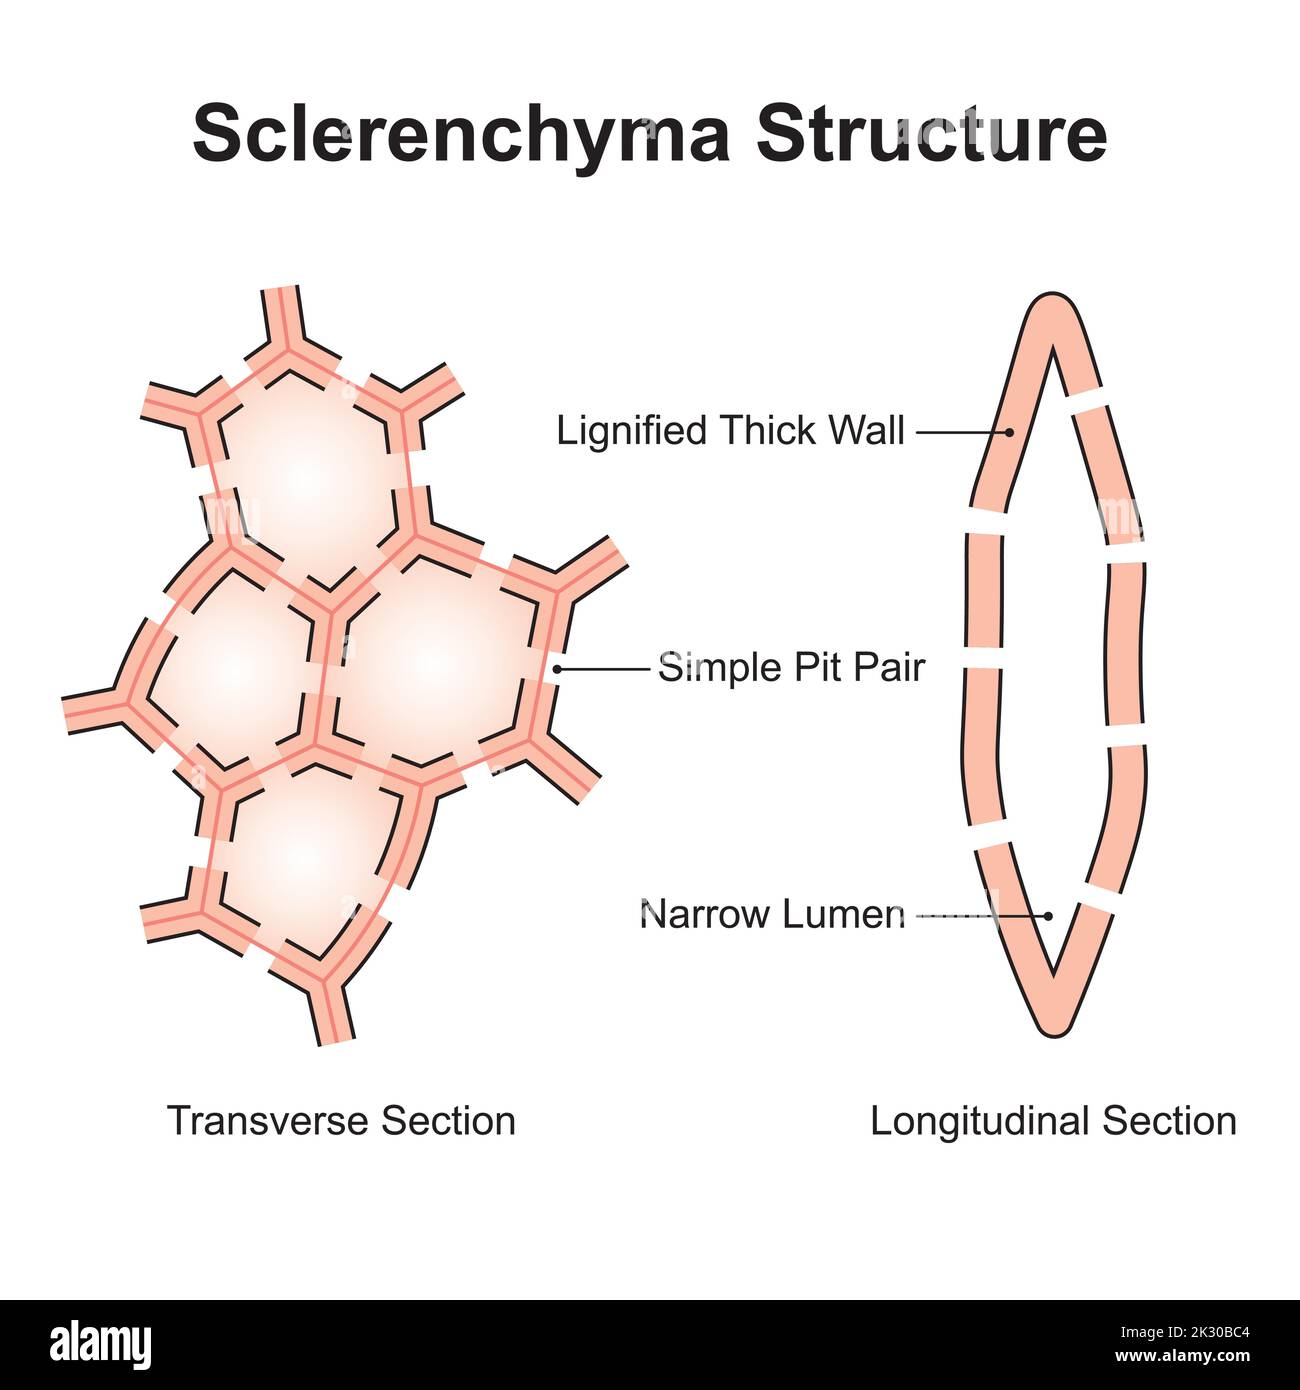 Conception scientifique de la structure sclérenchyme. Type de cellule qui a des parois lignifiées. Symboles colorés. Illustration vectorielle. Illustration de Vecteur